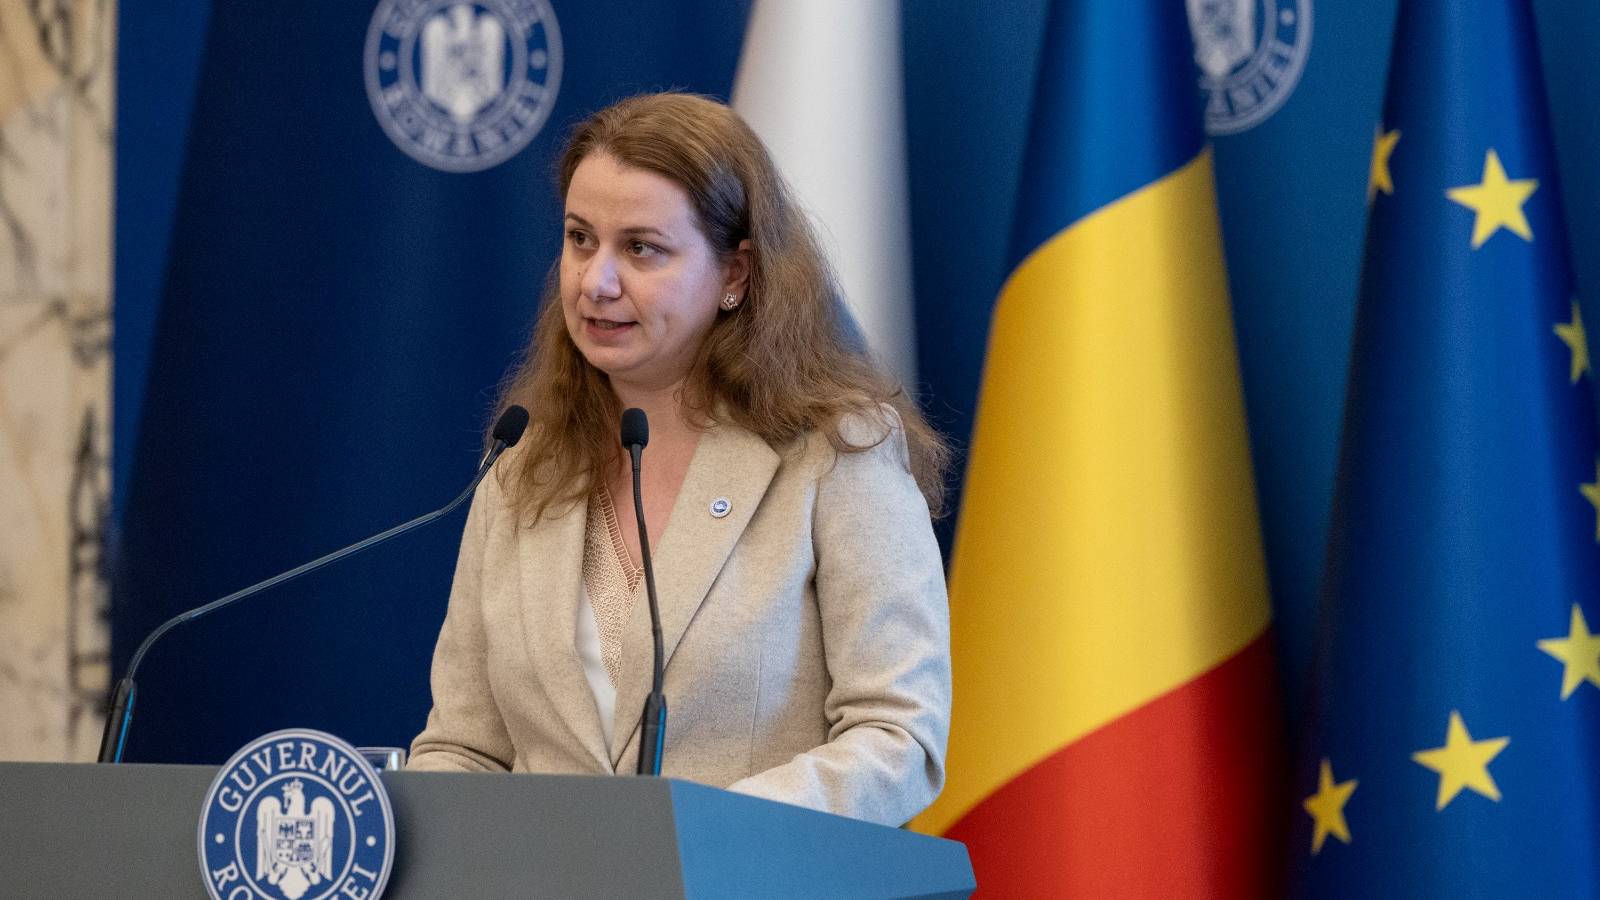 Minister van Onderwijs Officiële aankondiging Onderwijsacties LAATSTE MOMENT Roemenië